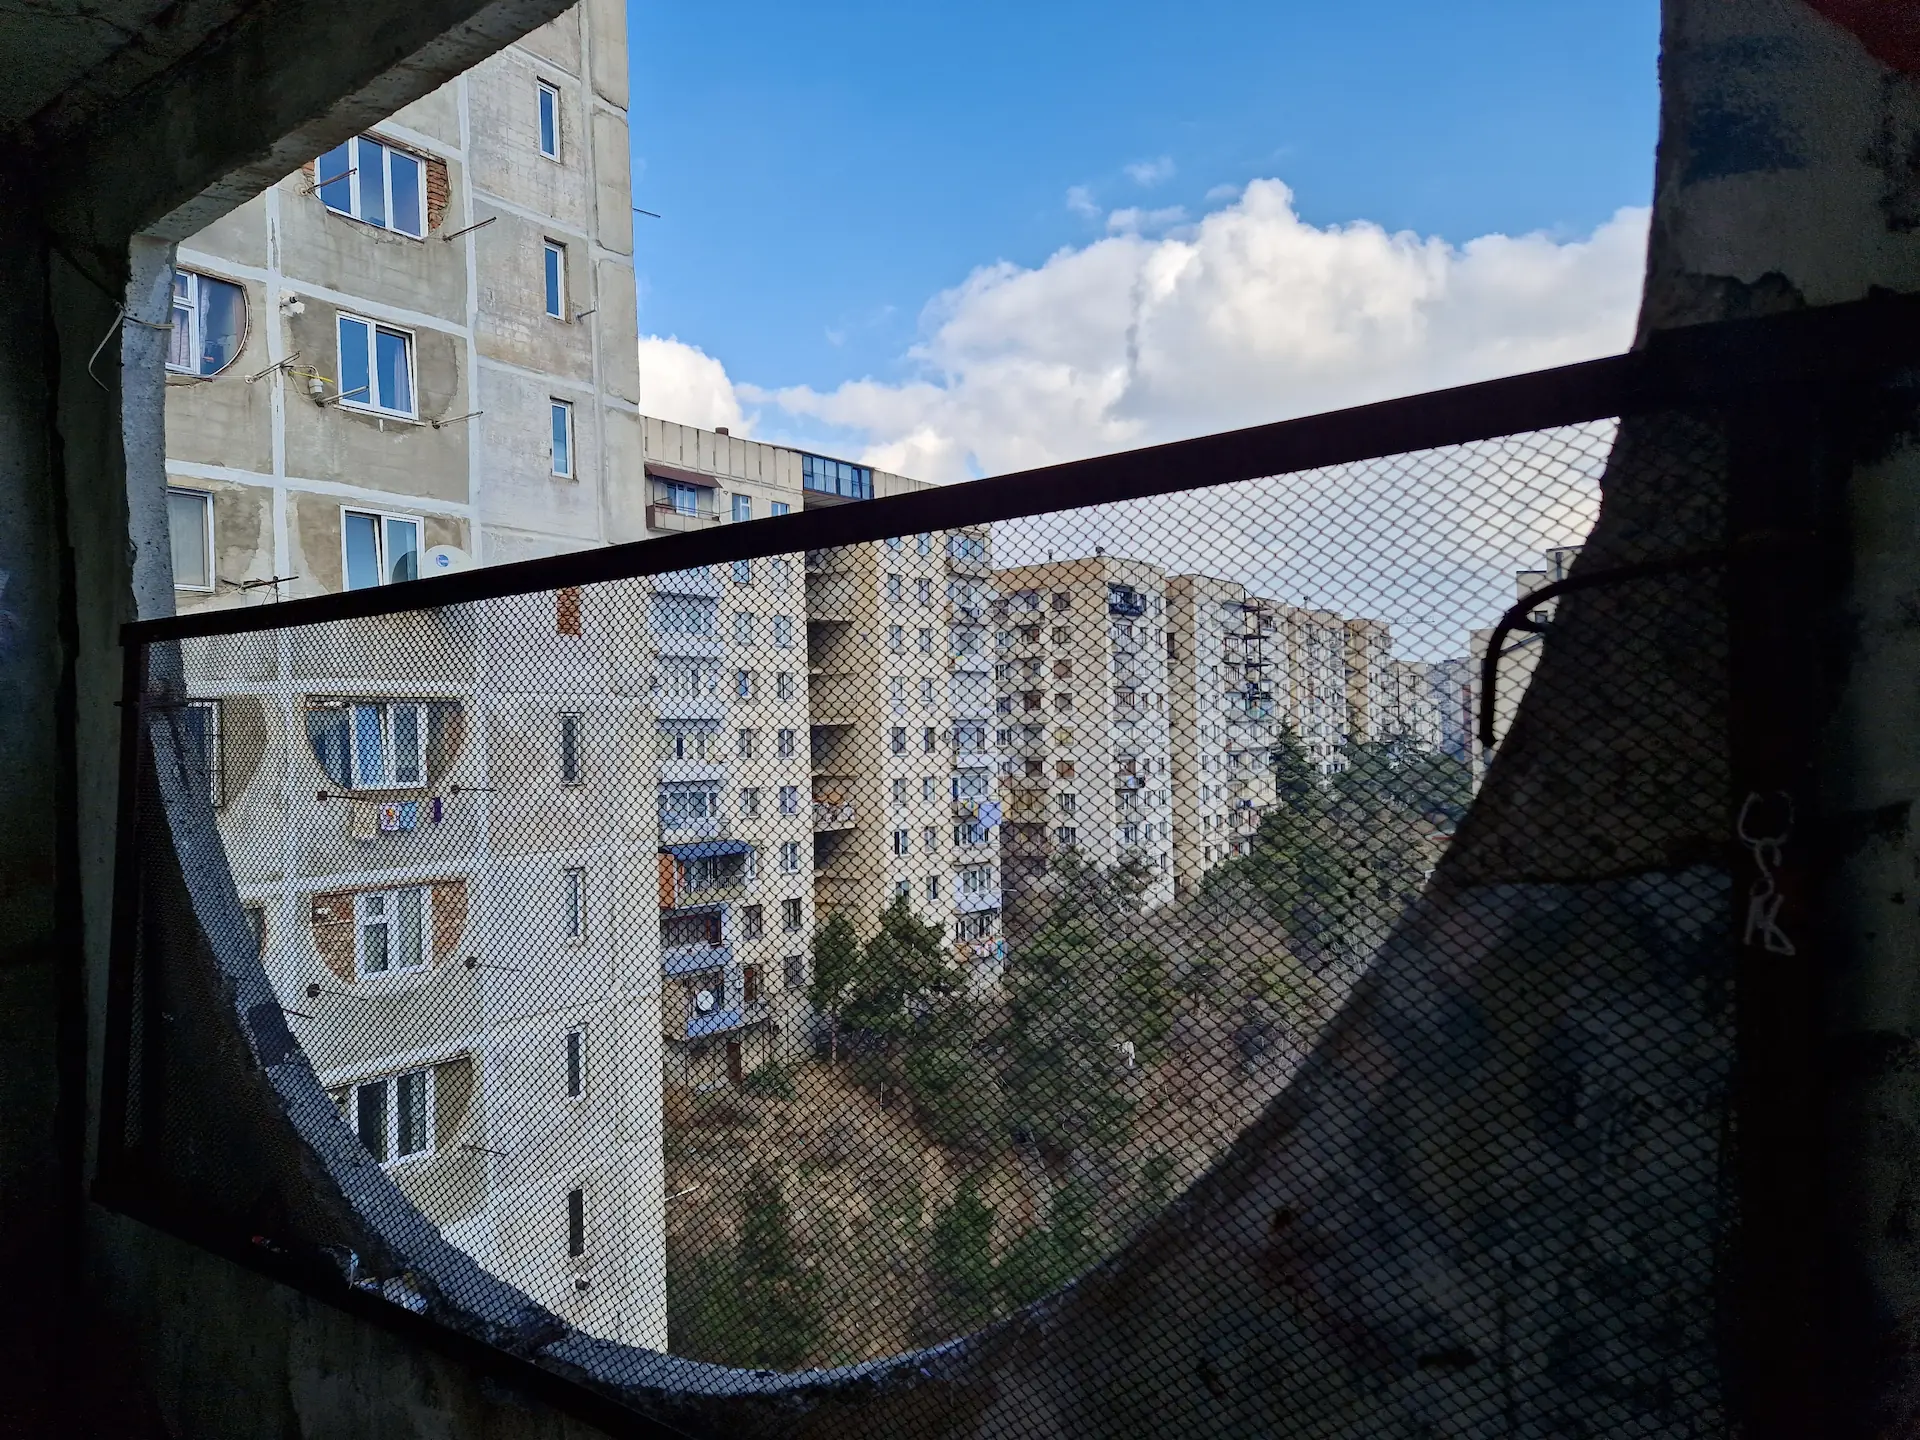 À travers une ouverture en demi-cercle, on aperçoit un bloc de bâtiments soviétiques.